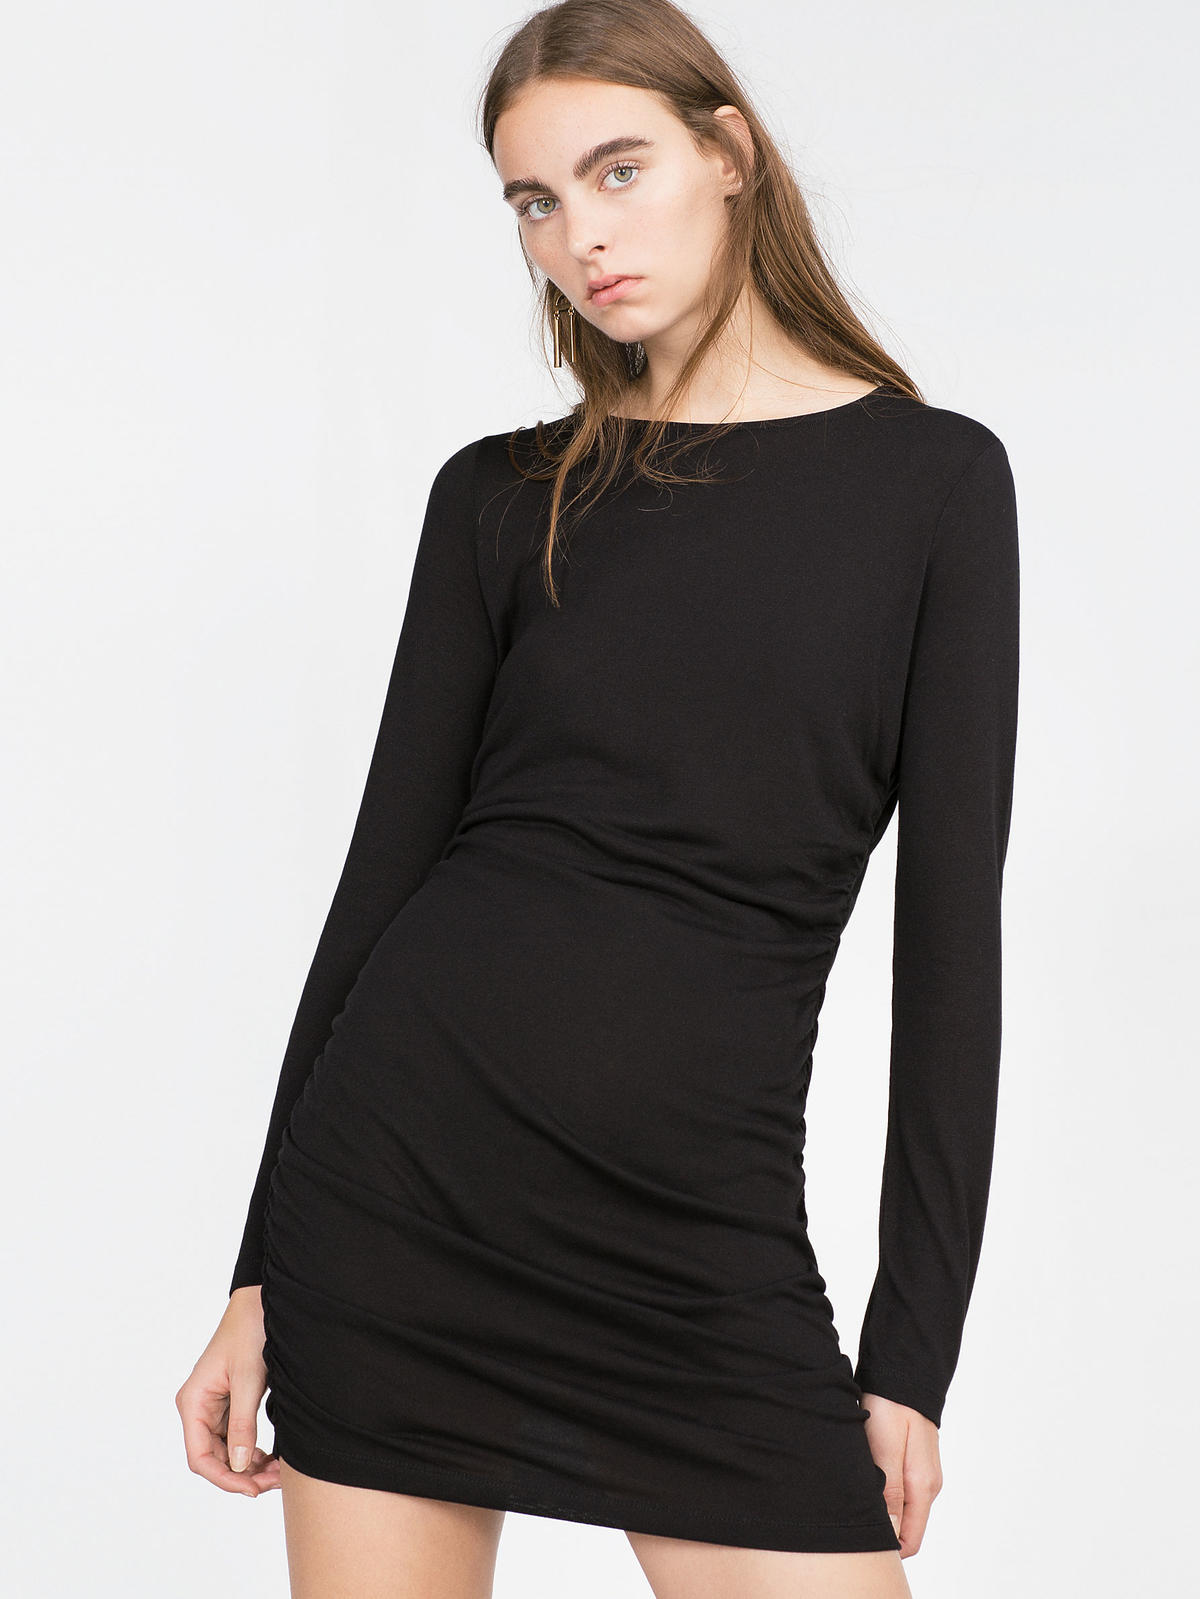 Czarna sukienka Zara  - 29,90 zł